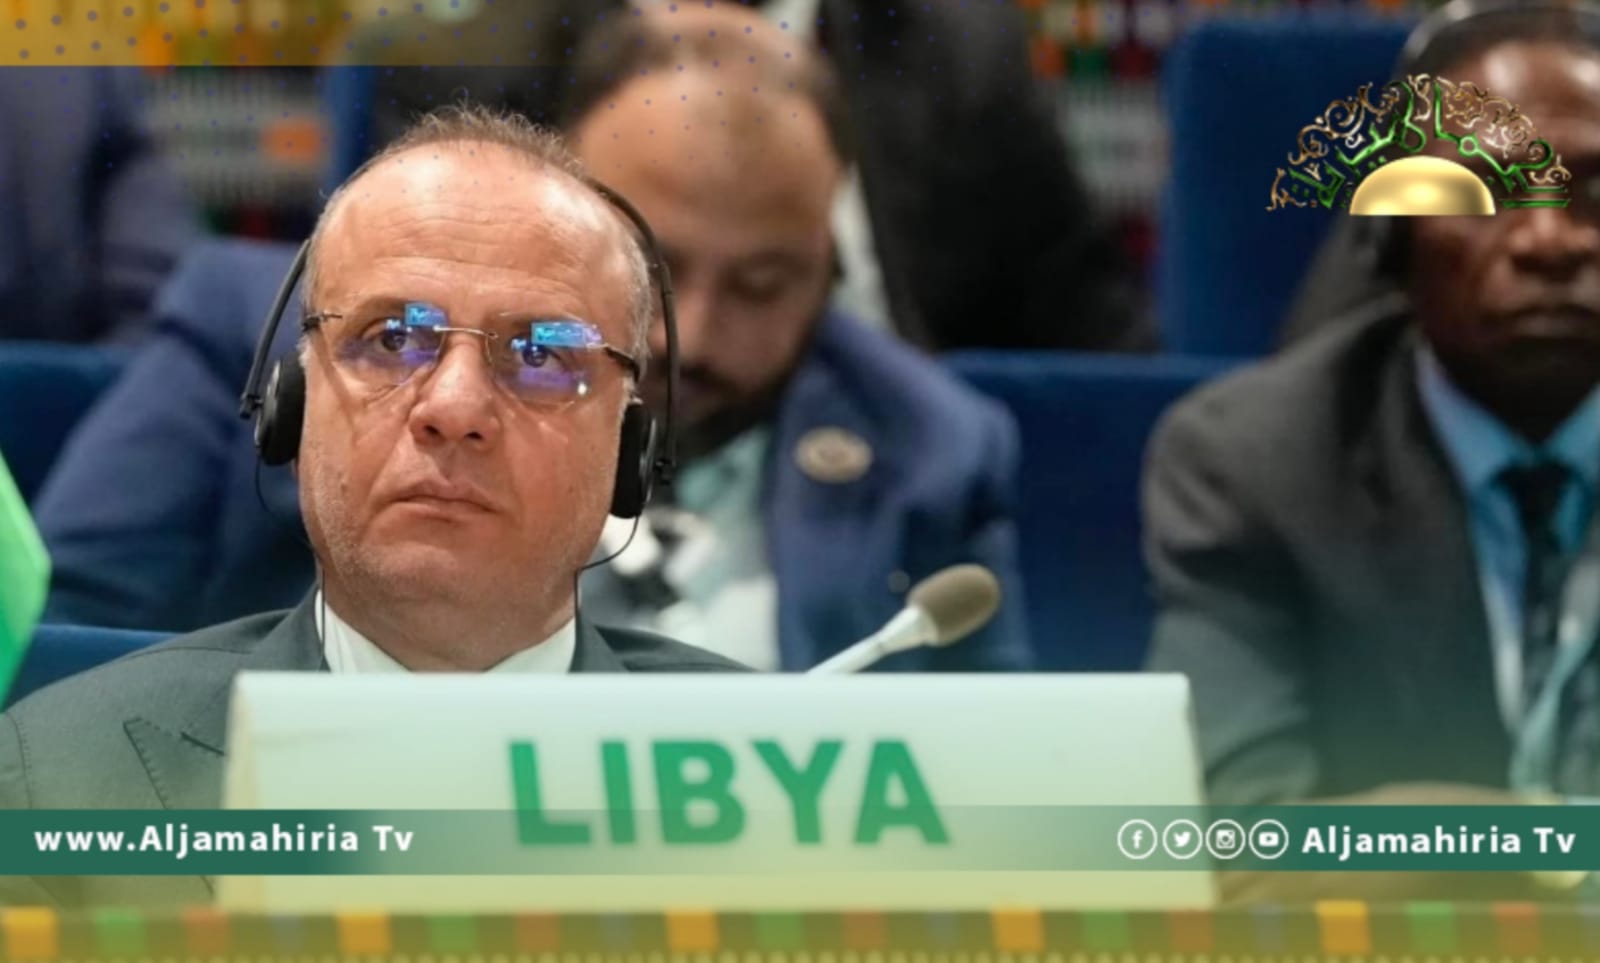 اللافي: المؤسسات والأجهزة الليبية تعمل على تنويع الاقتصاد وتوفير السلع الأساسية